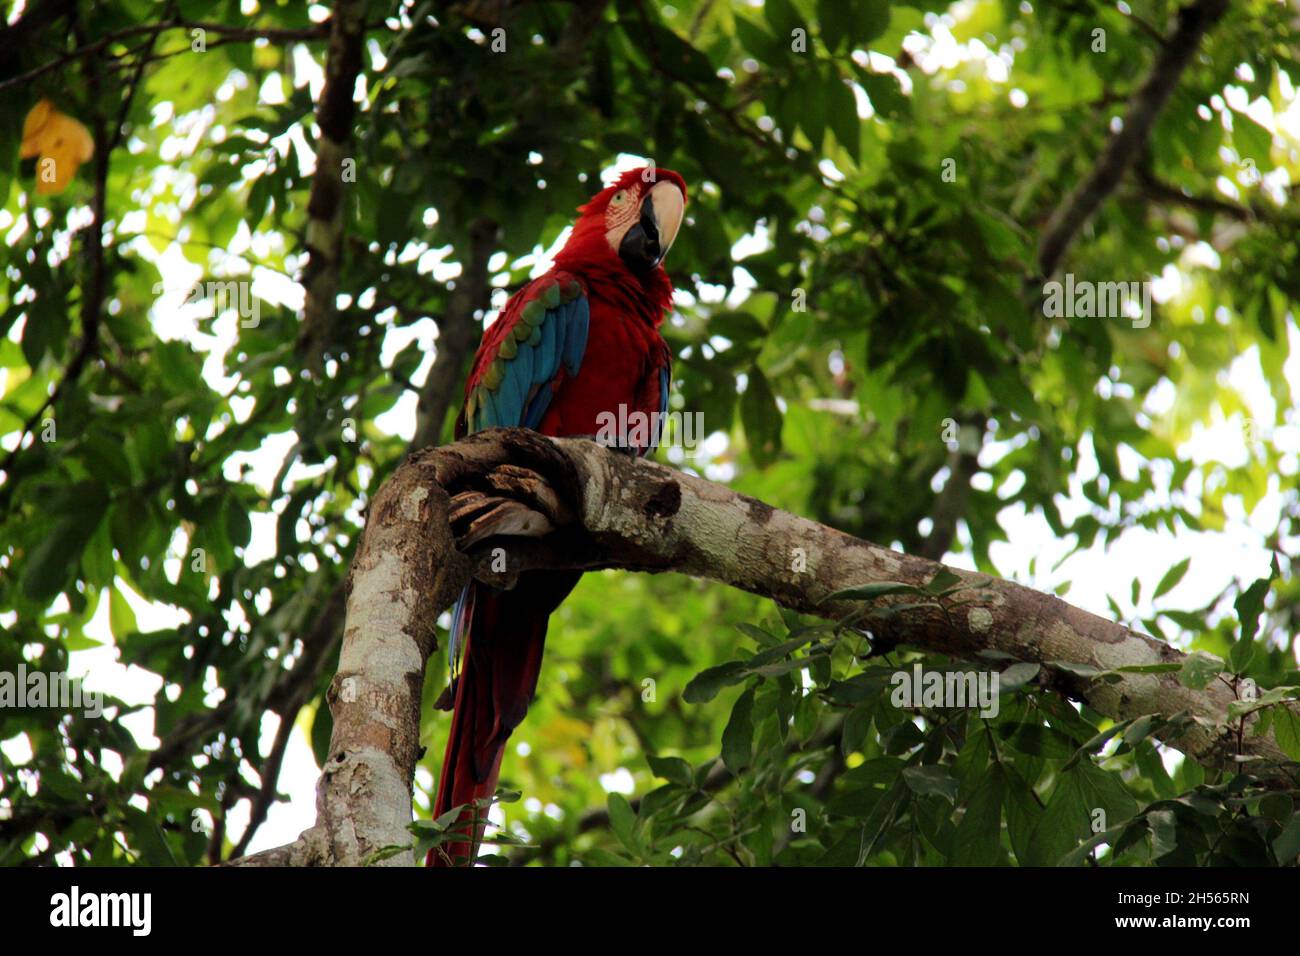 Roter Papagei auf einem Baumstamm, mit verschwommenem Hintergrund in Bonito - Mato Grosso do Sul - Brasilien. Stockfoto